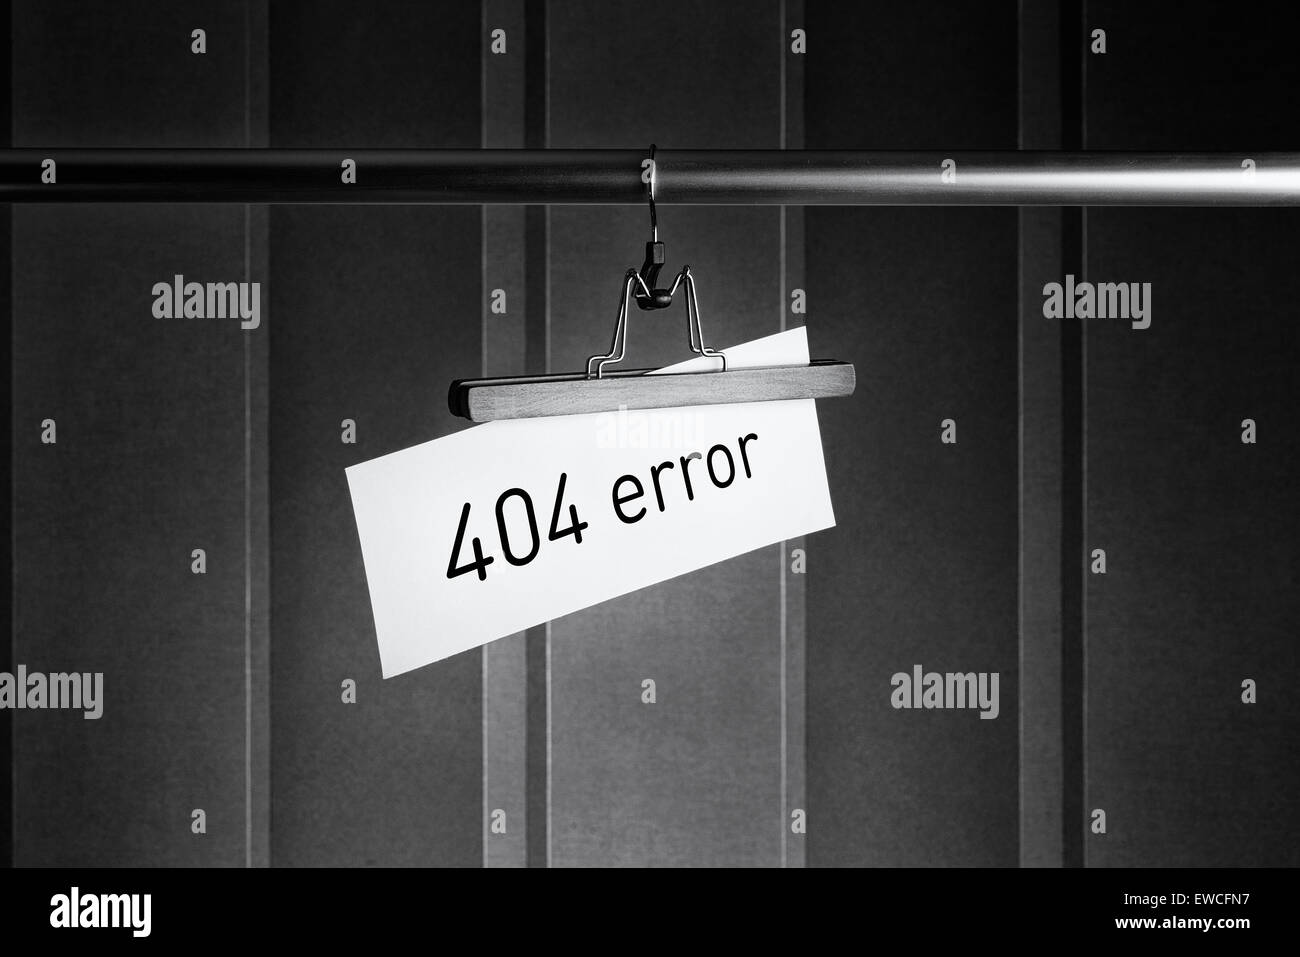 Imagen en blanco y negro de una percha pantalones con una etiqueta en la que está escrito "error 404" Foto de stock